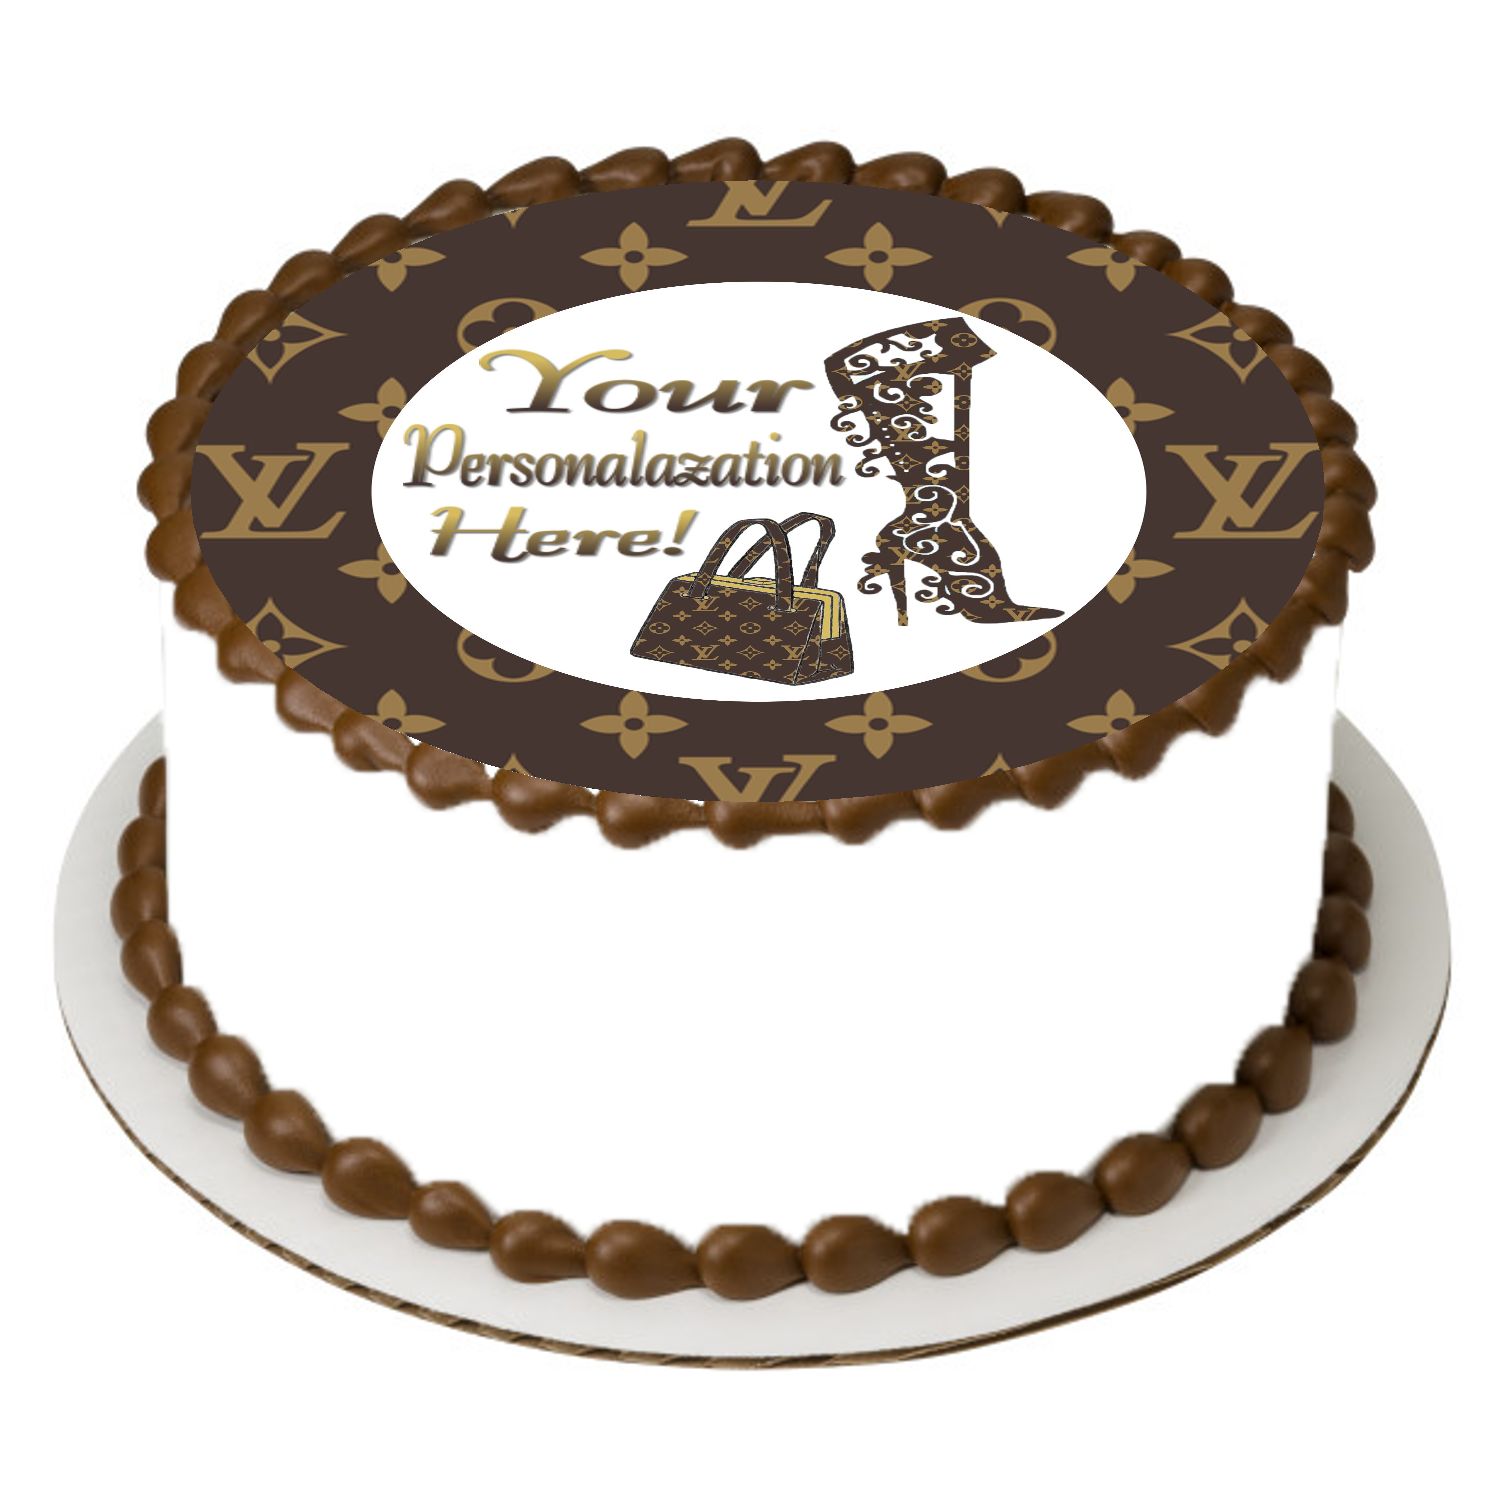 Louis Vuitton Cake Topper  Louis vuitton cake, Cake toppers, Vuitton